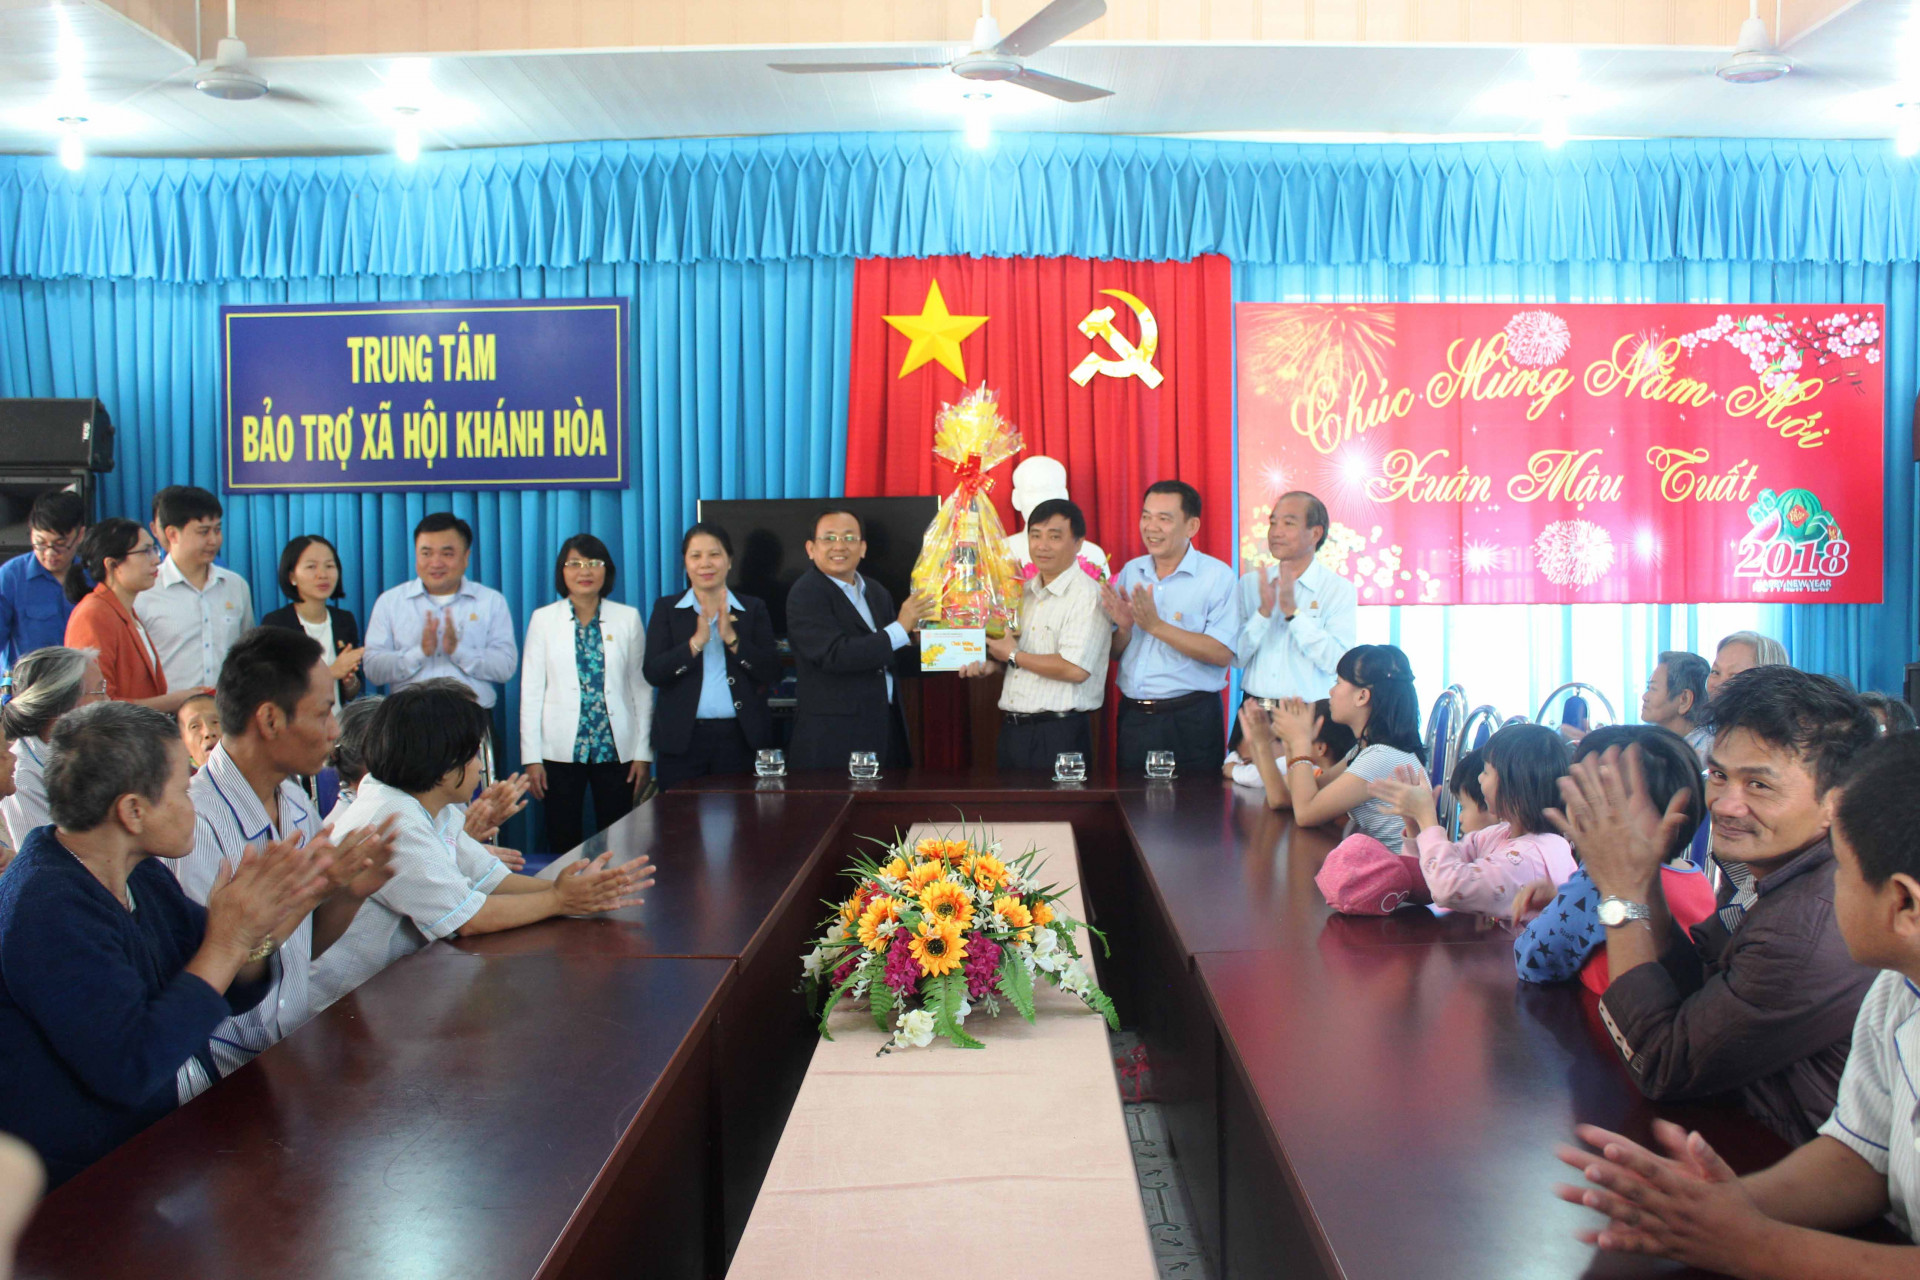 Công ty Yến Sào Khánh Hòa tặng quà cho Trung tâm Bảo trợ xã hội tỉnh